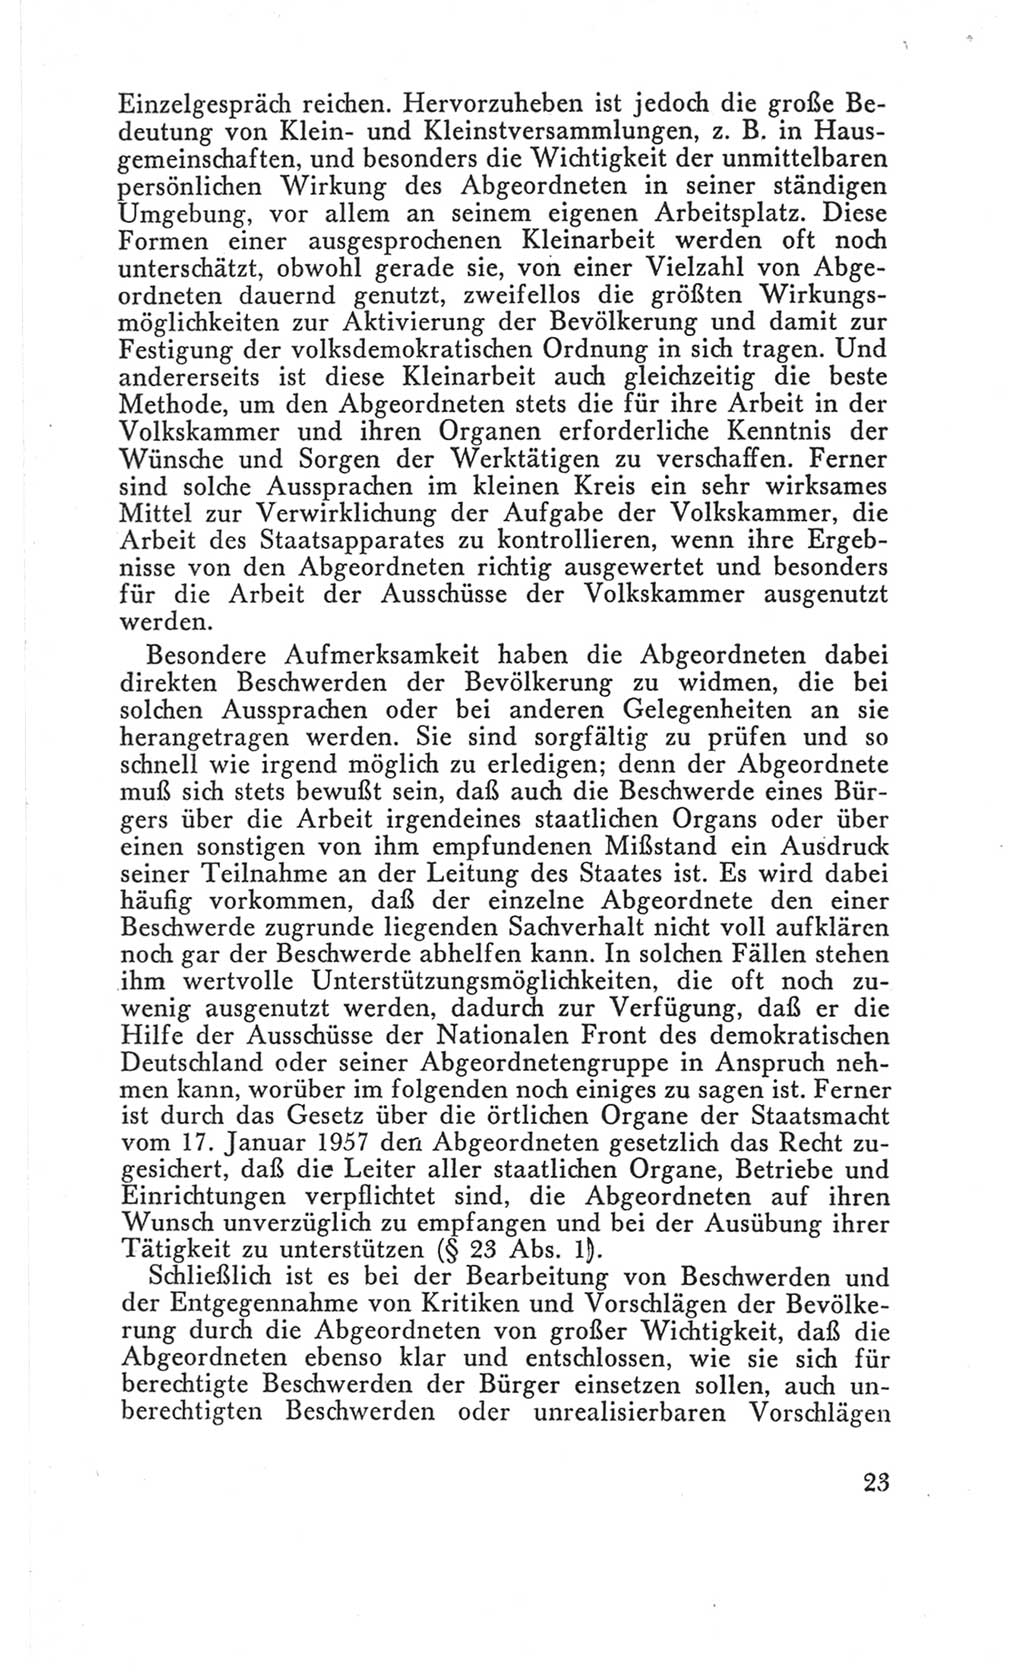 Handbuch der Volkskammer (VK) der Deutschen Demokratischen Republik (DDR), 3. Wahlperiode 1958-1963, Seite 23 (Hdb. VK. DDR 3. WP. 1958-1963, S. 23)